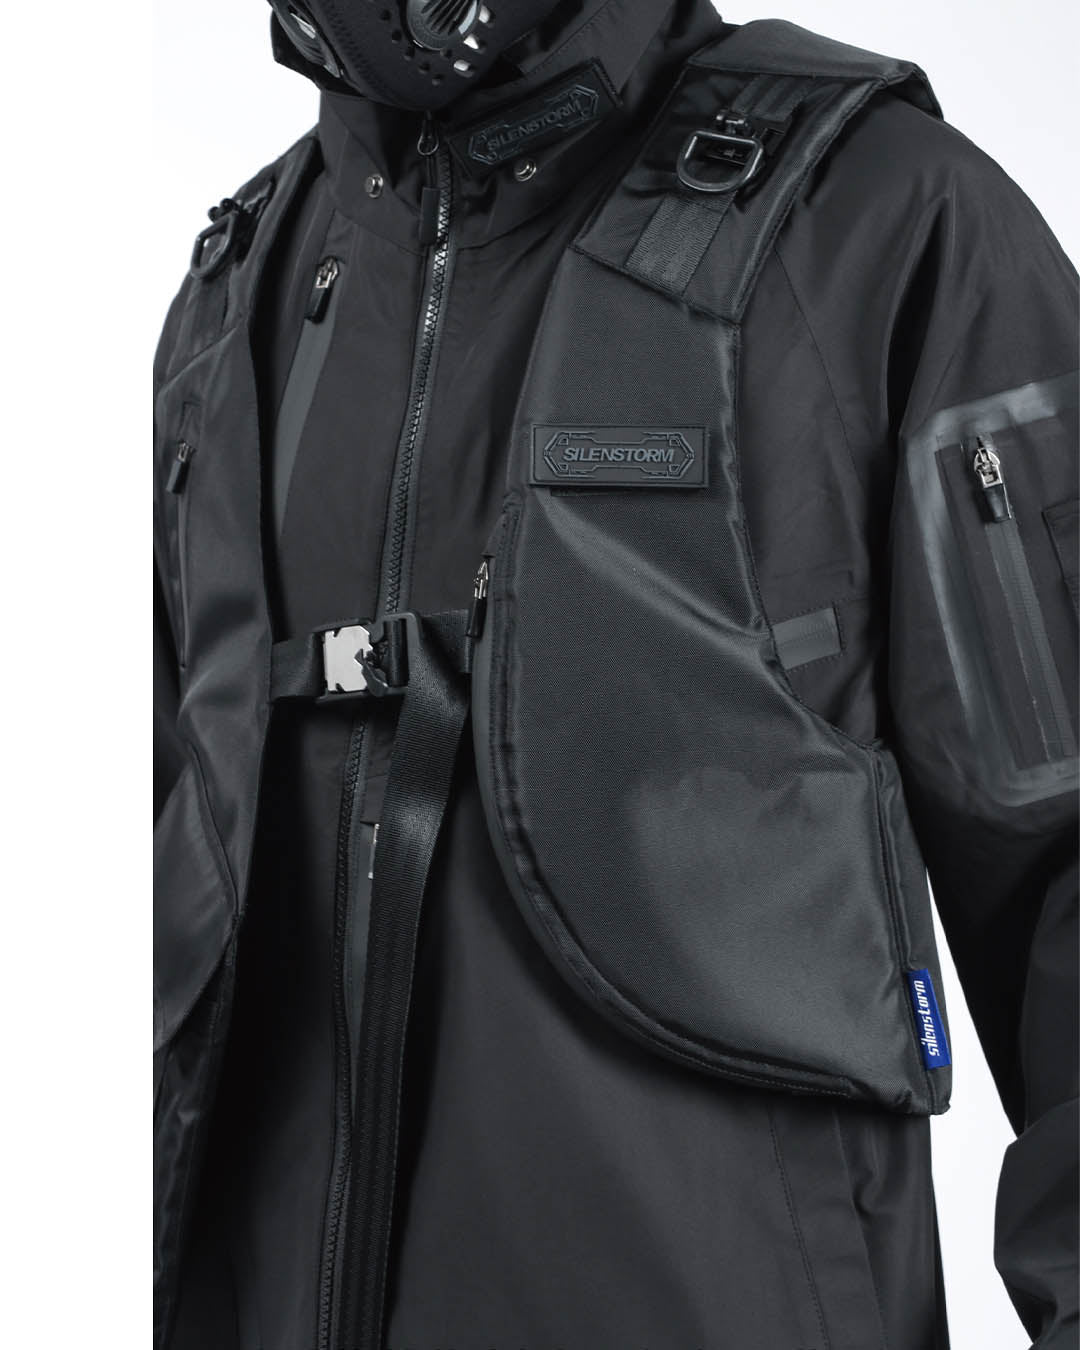 black tactical vest fashion